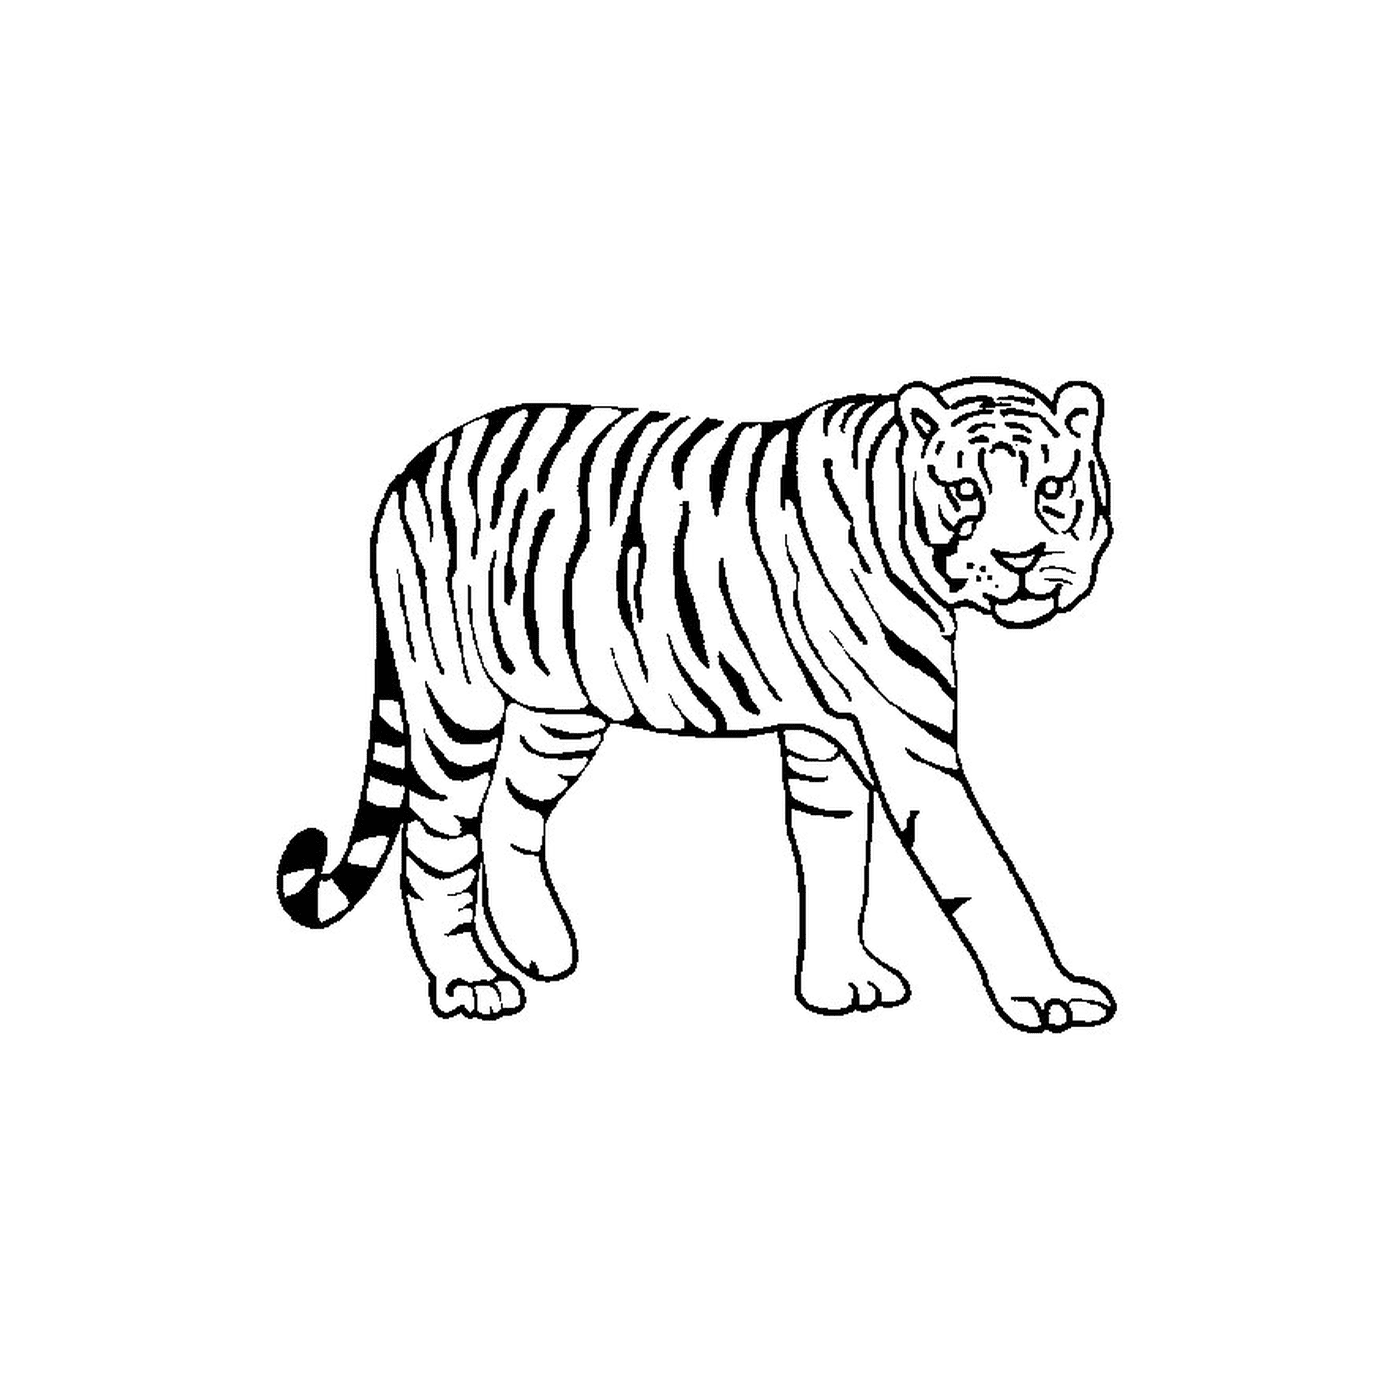  एक बाघ 